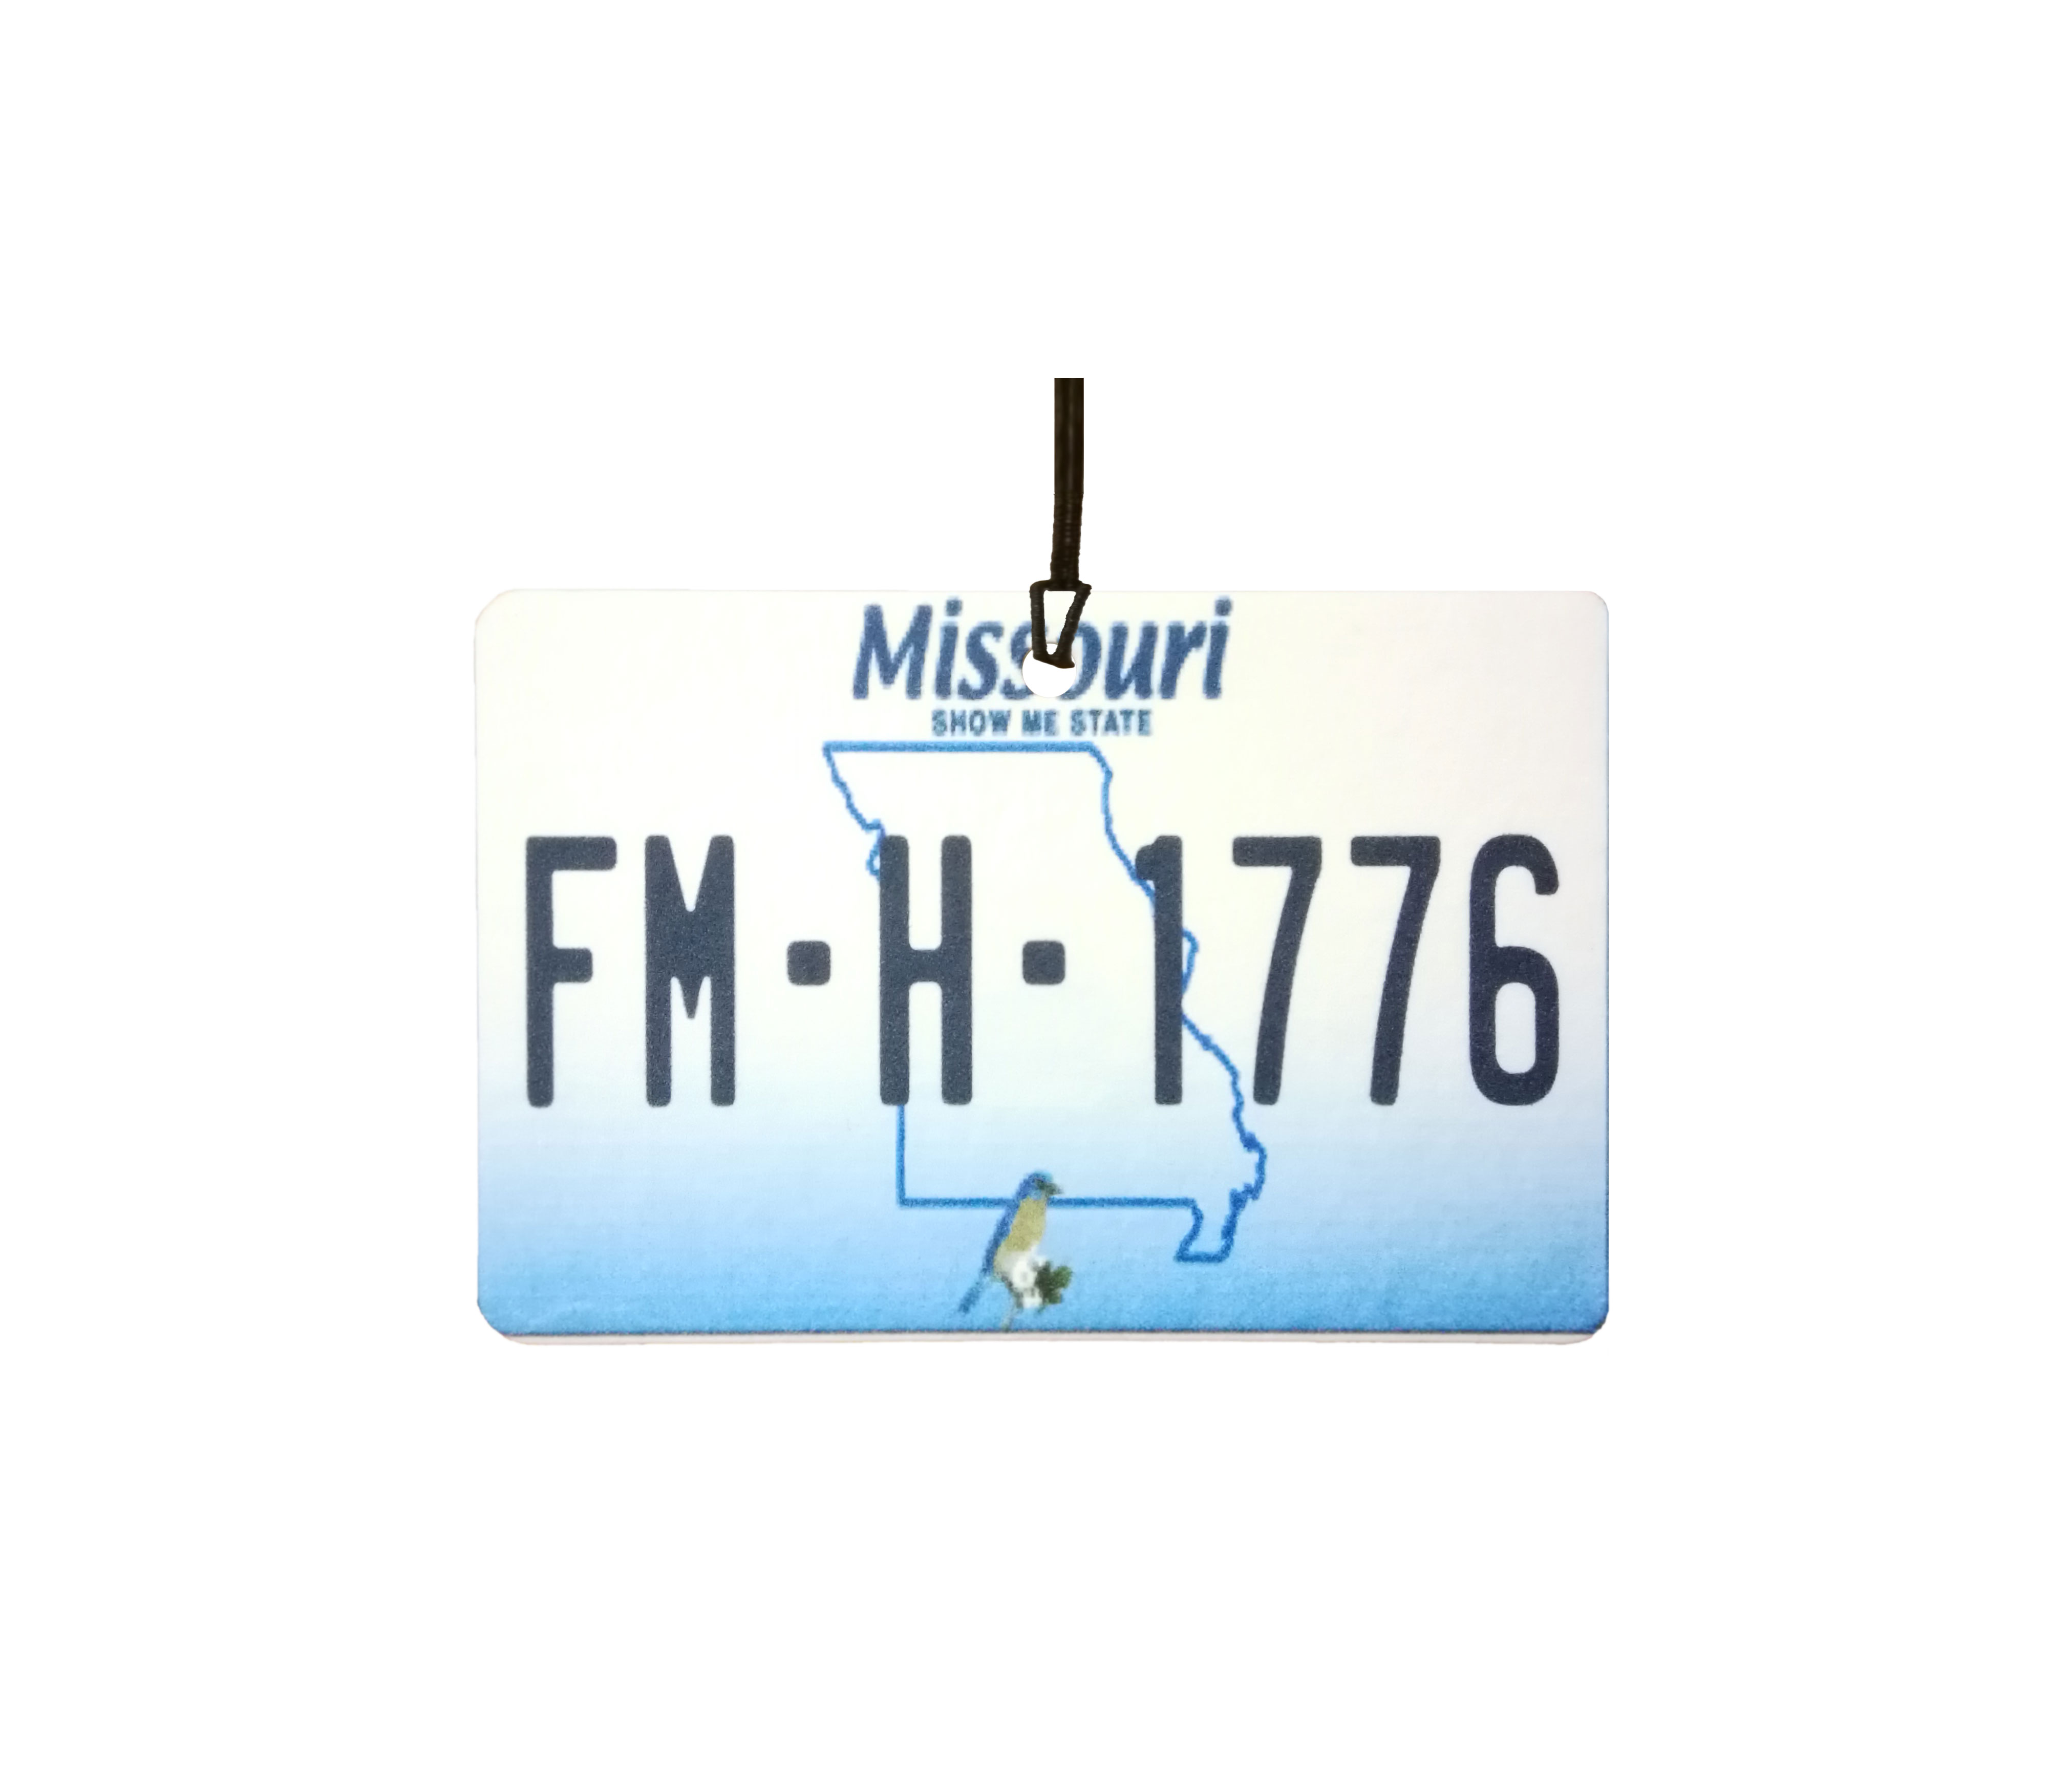 Personalised Missouri License Plate